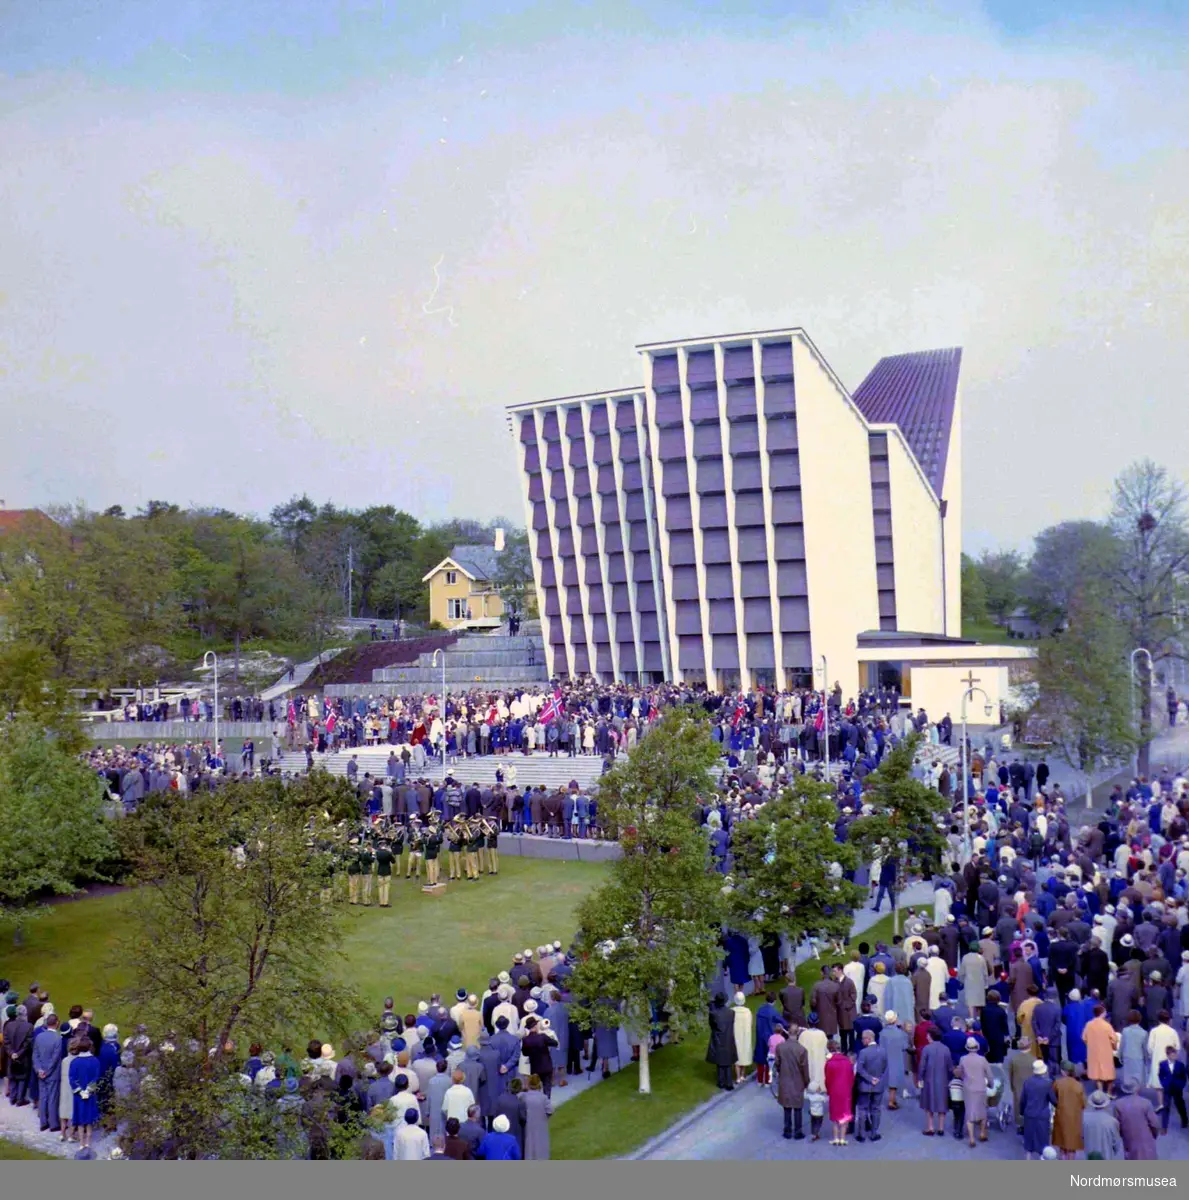 Trolig fra innvielsen av Kirkelandet kirke den 24.mai 1964, på Kirkelandet i Kristiansund. Fotograf er Nils Williams. Fra Nordmøre museums fotosamlinger.